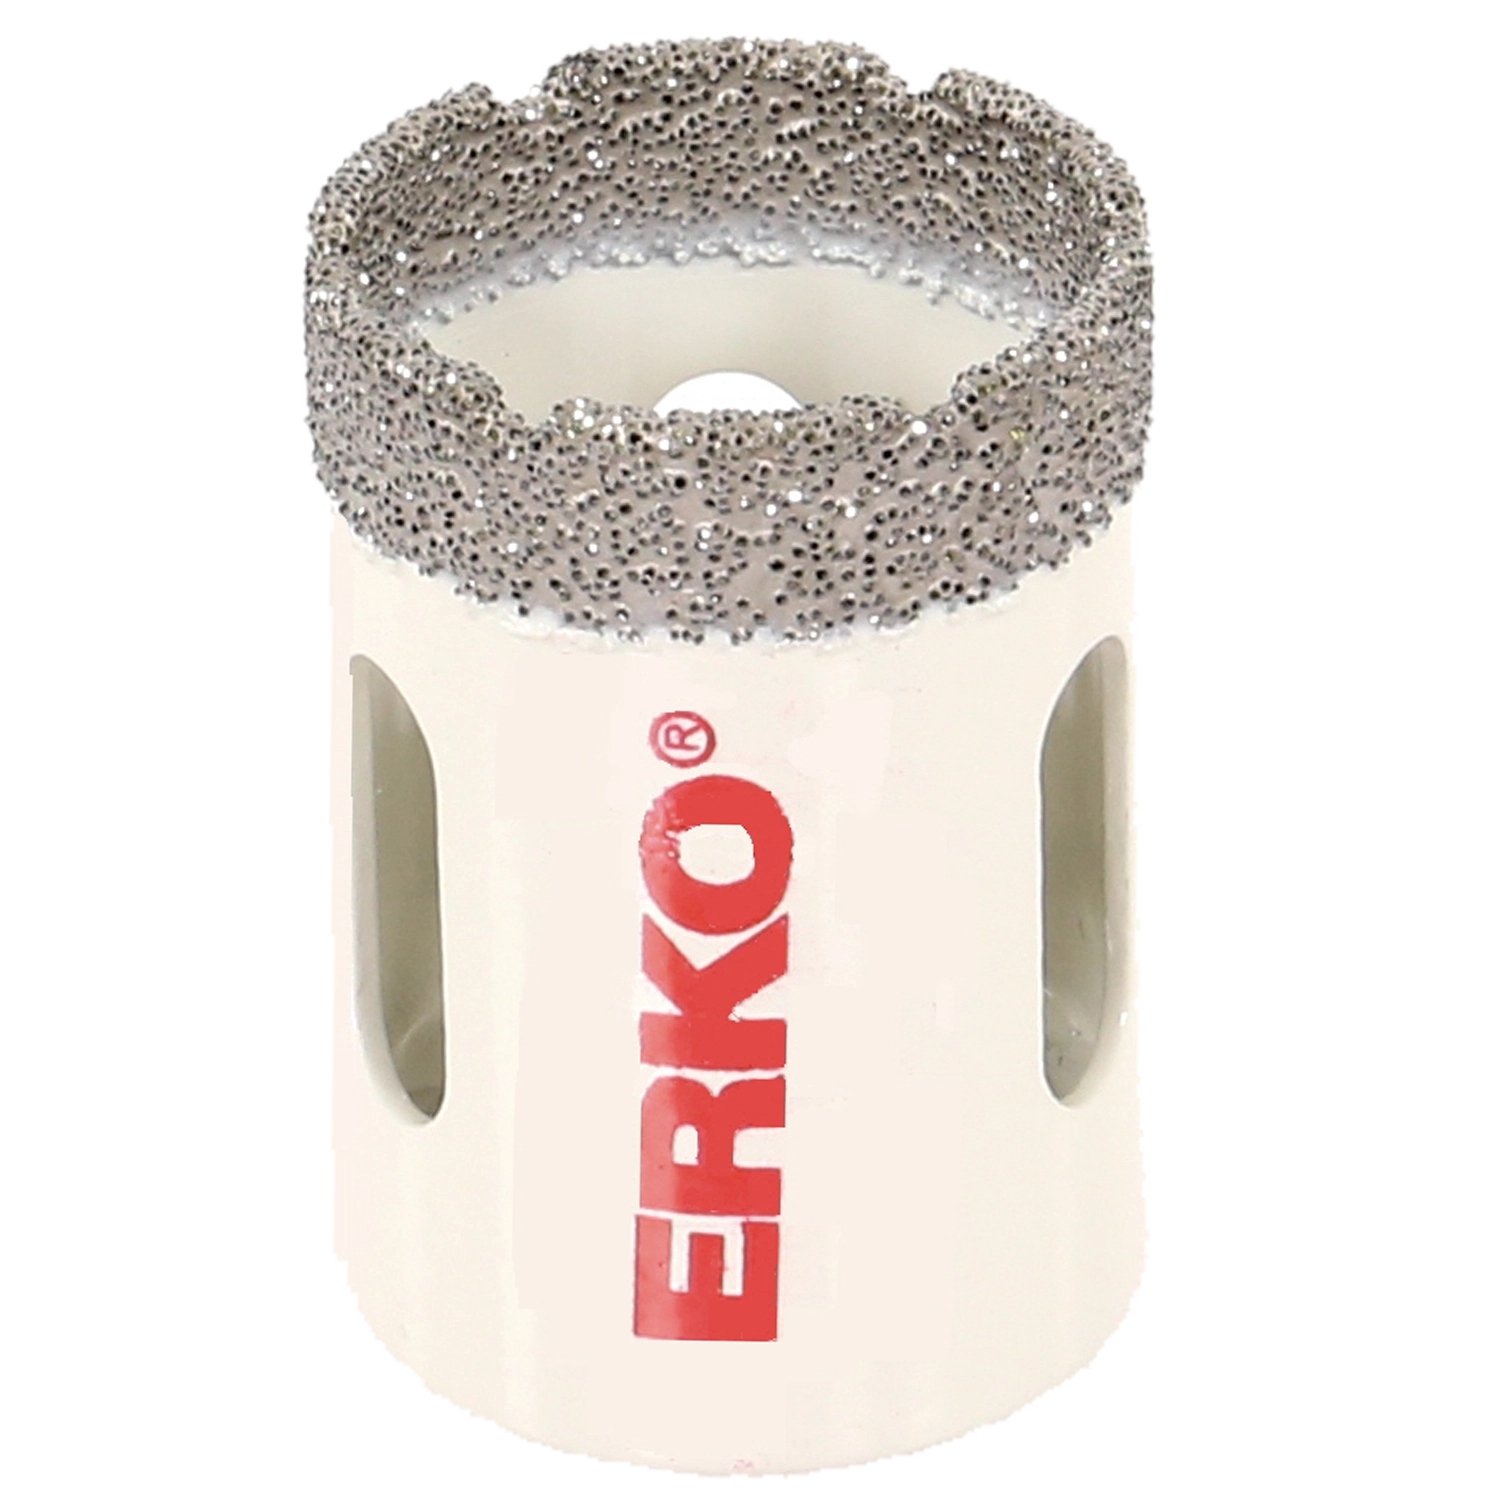 Witte ERKO diamantdroogboor voor tegels. Ruwe bovenkant. 3 gaten voor afvoer. Groot rood ERKO logo.